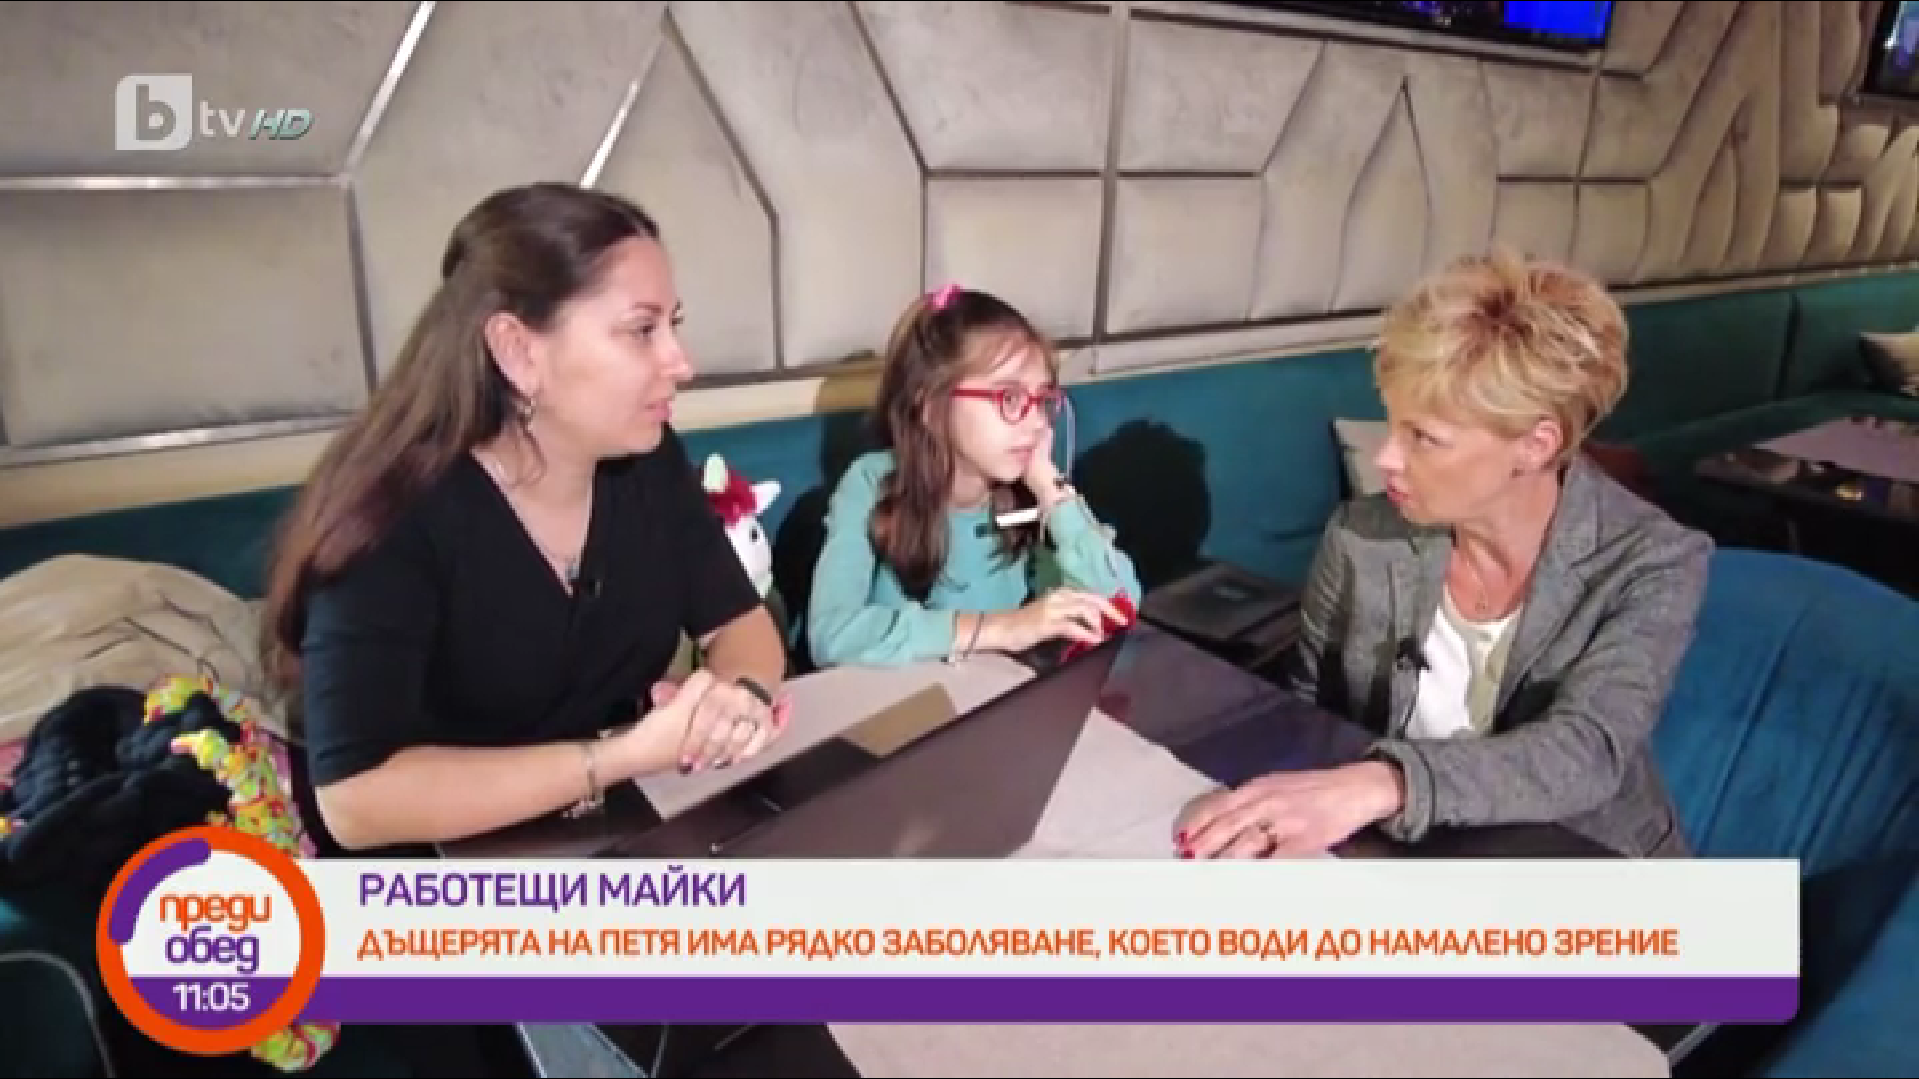 Петя Колева в "Работещи майки", bTV